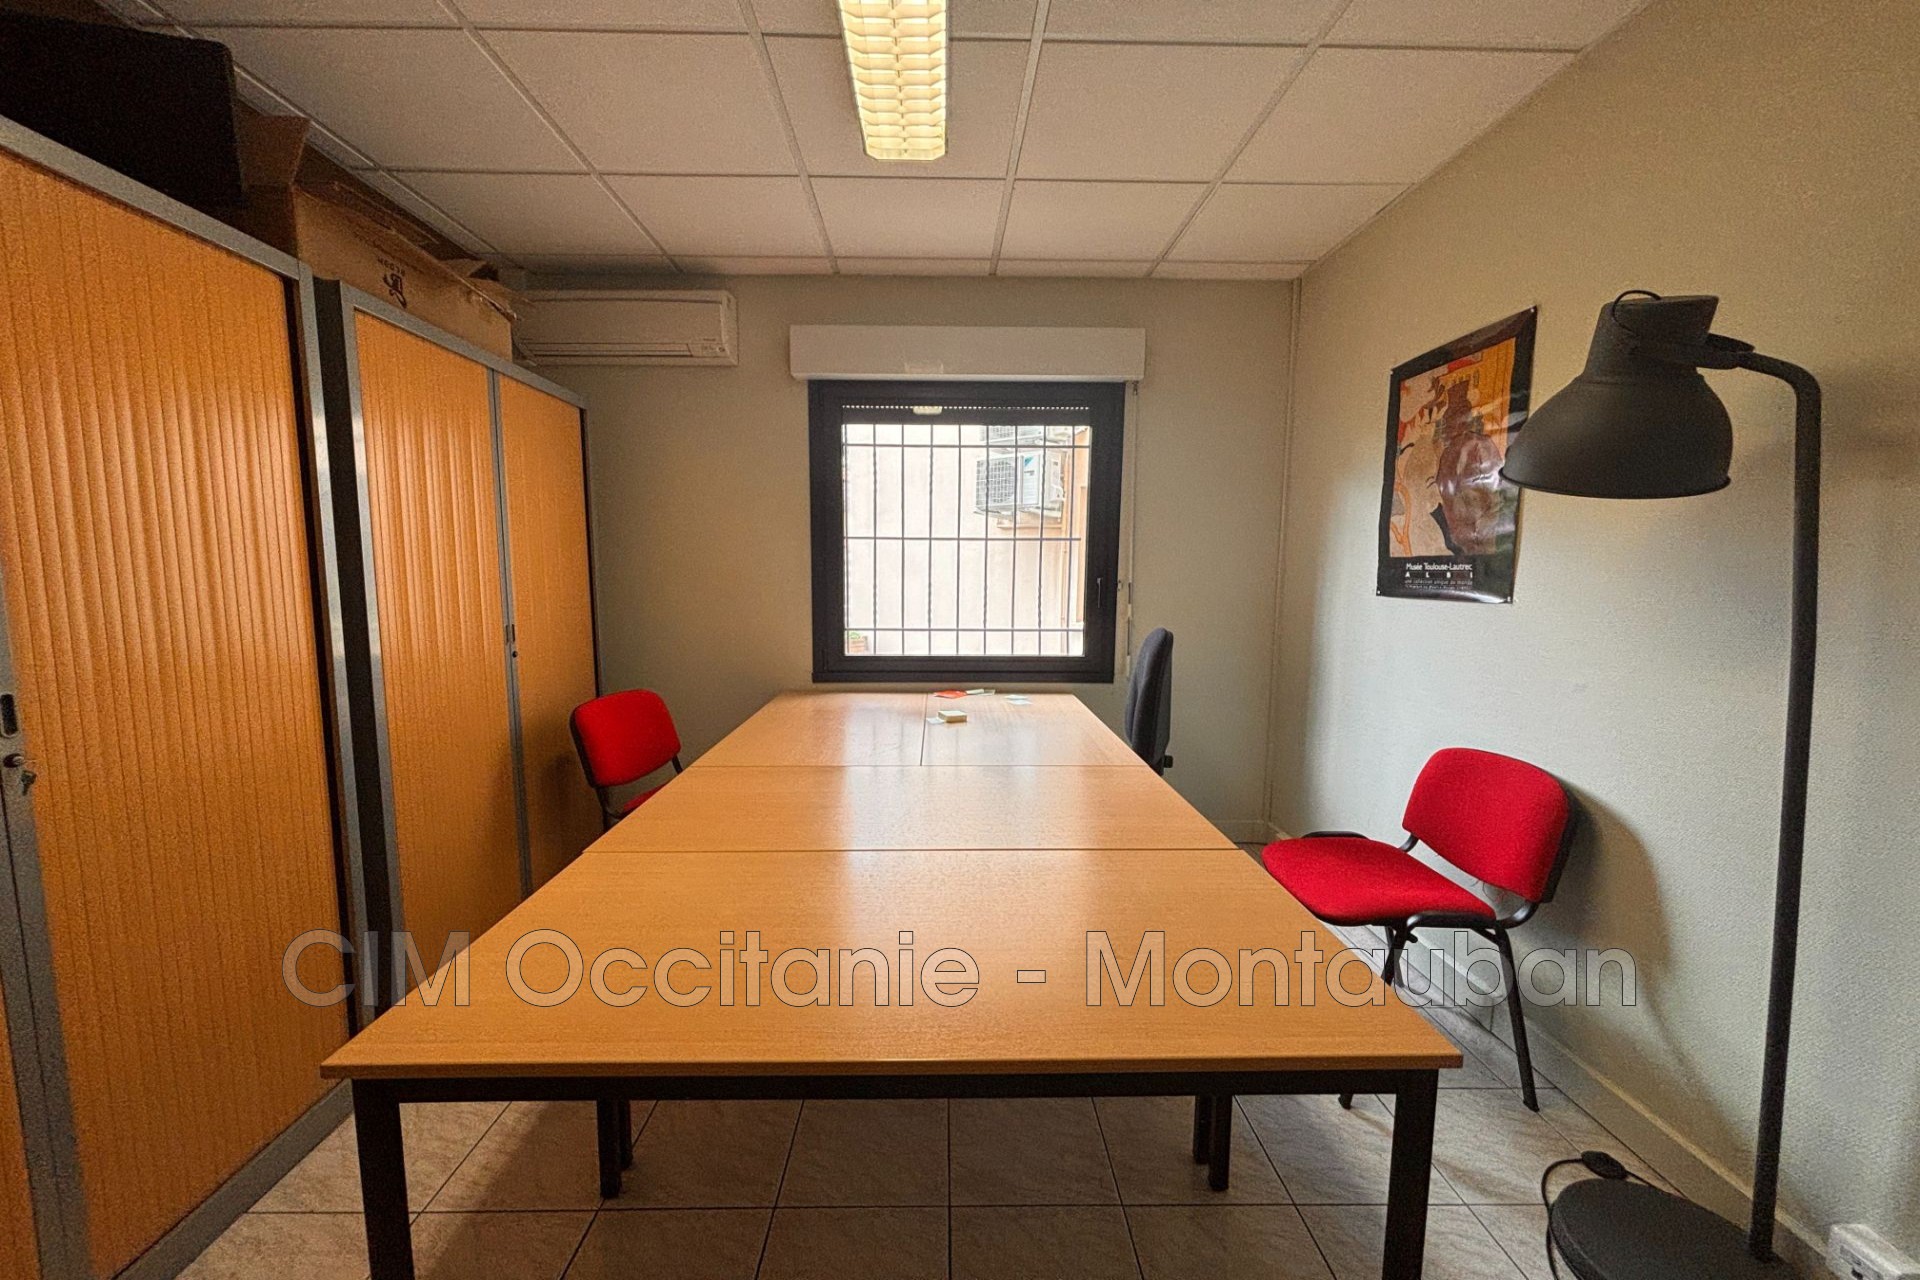 Location Bureau / Commerce à Montauban 0 pièce